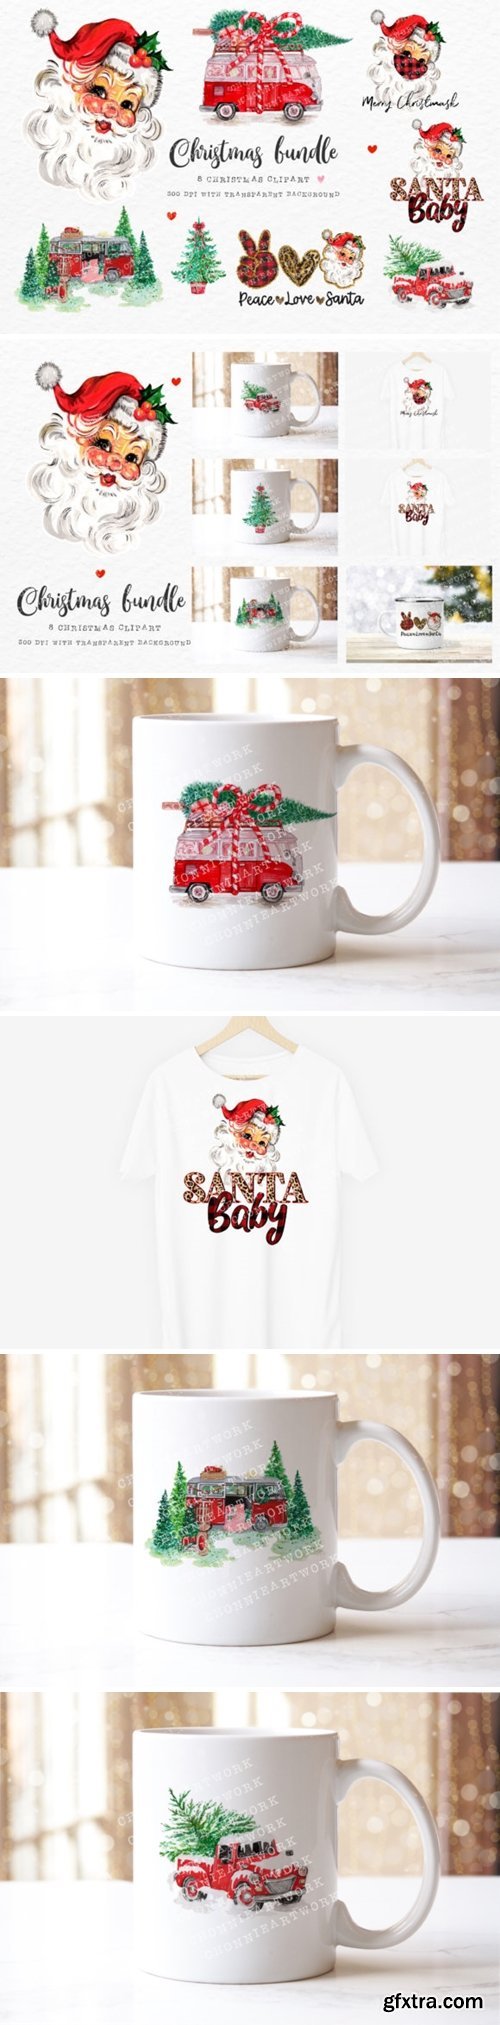 Christmas Bundle with Santa Baby 6918720